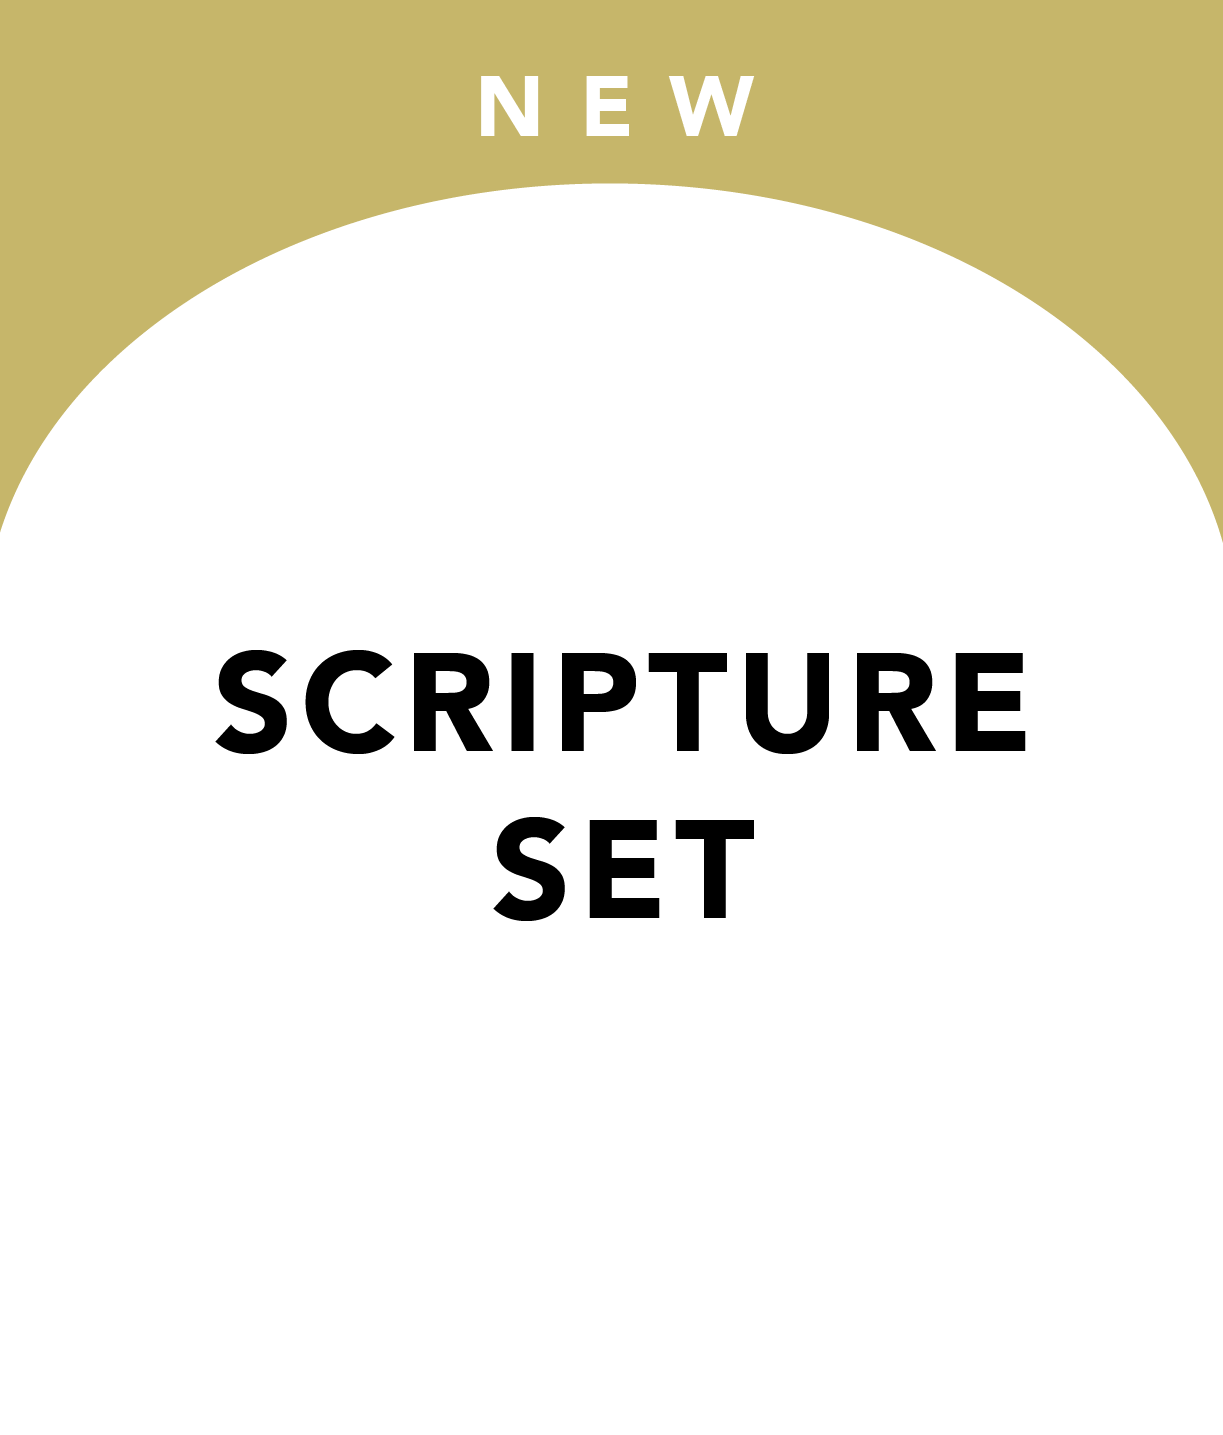 Scripture set